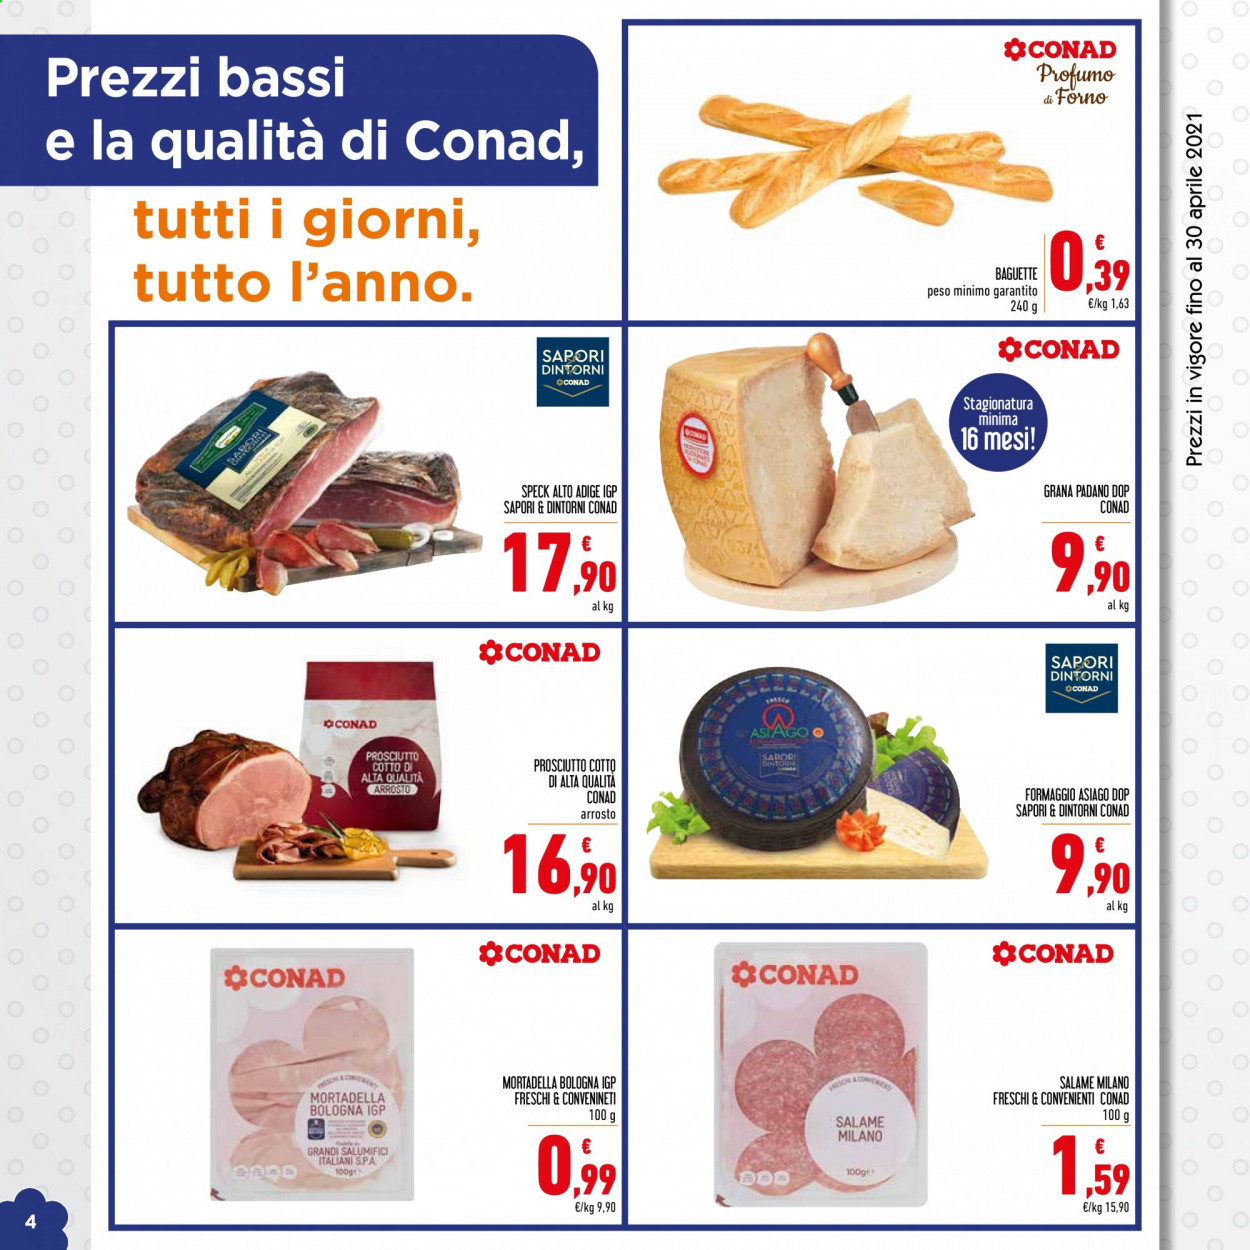 thumbnail - Volantino Conad - 1/4/2021 - 30/4/2021 - Prodotti in offerta - baguette, speck, prosciutto cotto, mortadella, Grana Padano, Asiago, profumo. Pagina 4.